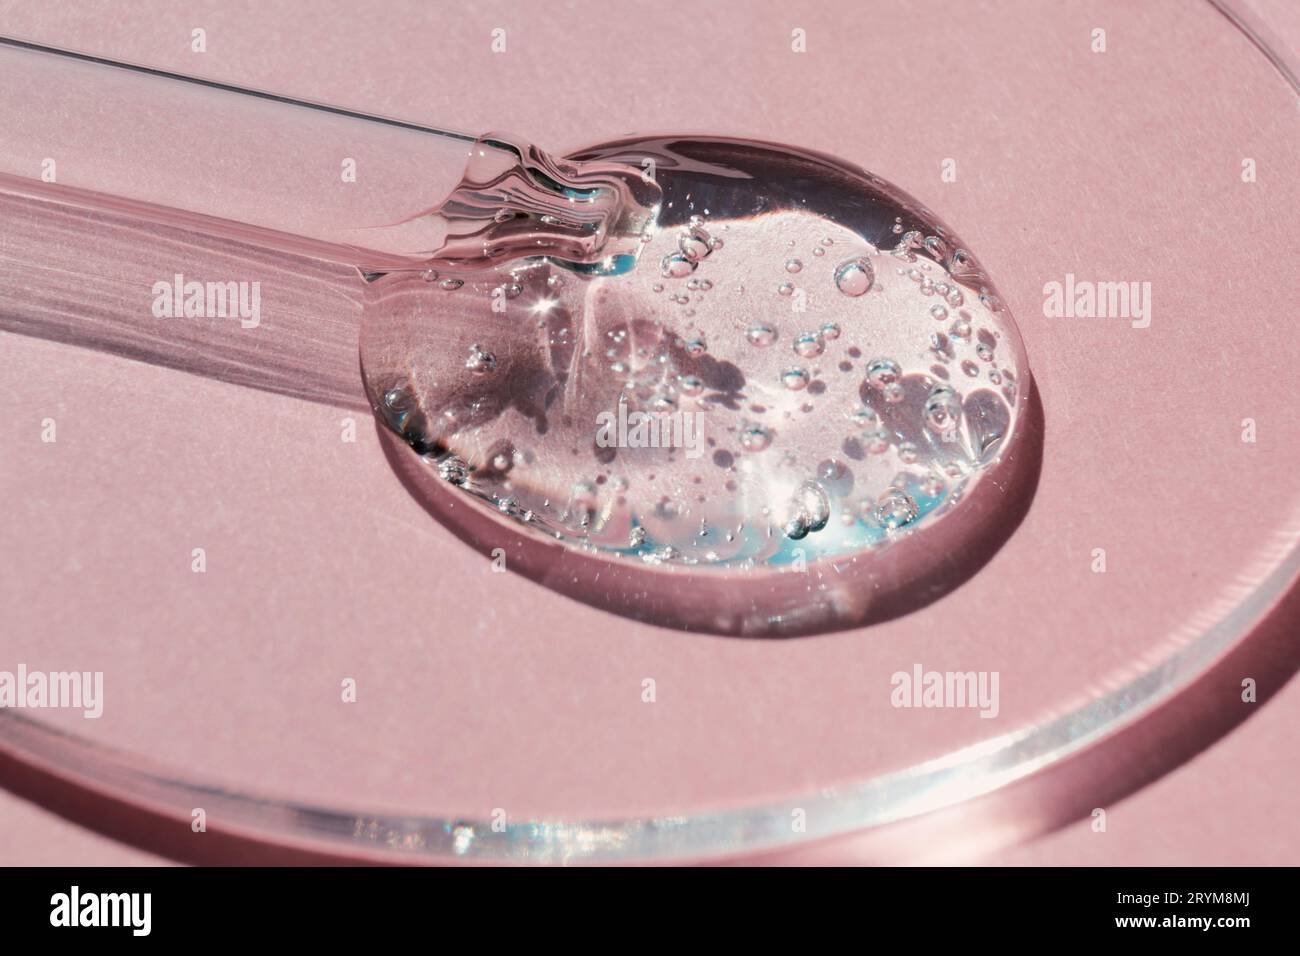 Pipeter avec un échantillon de gels de produit cosmétique dans une boîte de Pétri sur fond rose, ombres dures Banque D'Images